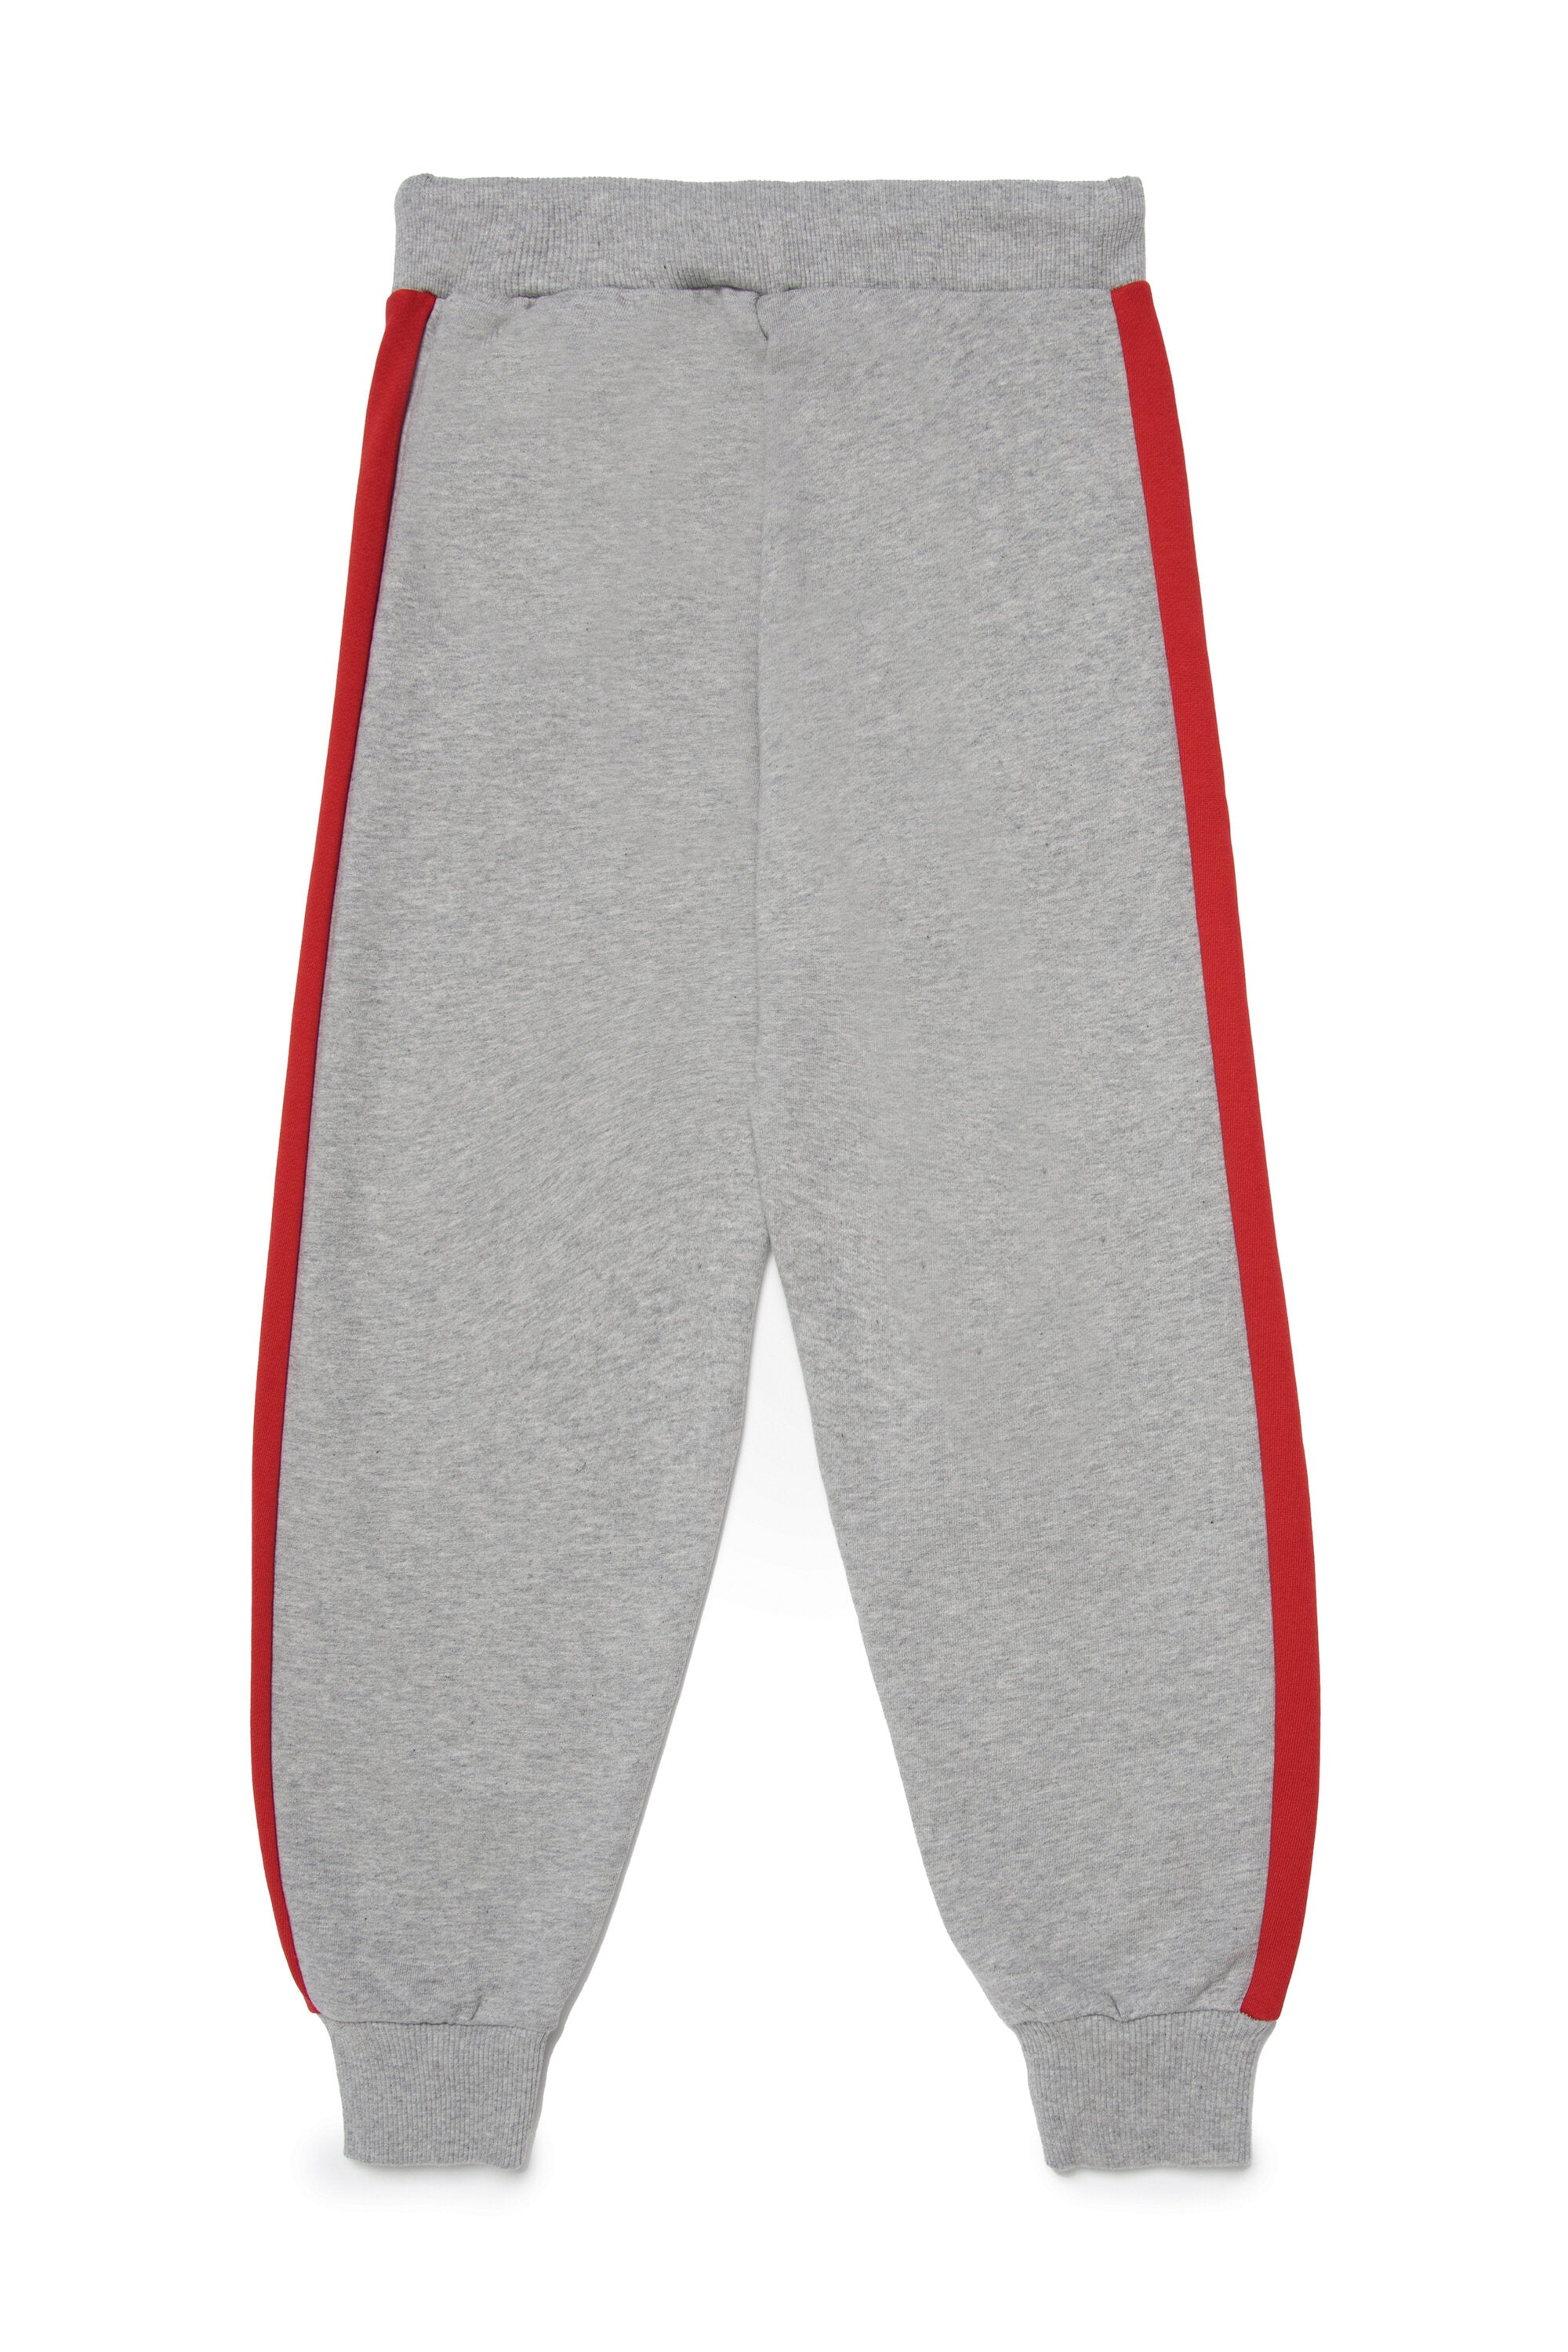 Pantalones deportivos en chándal con marca en chándal  colorblock